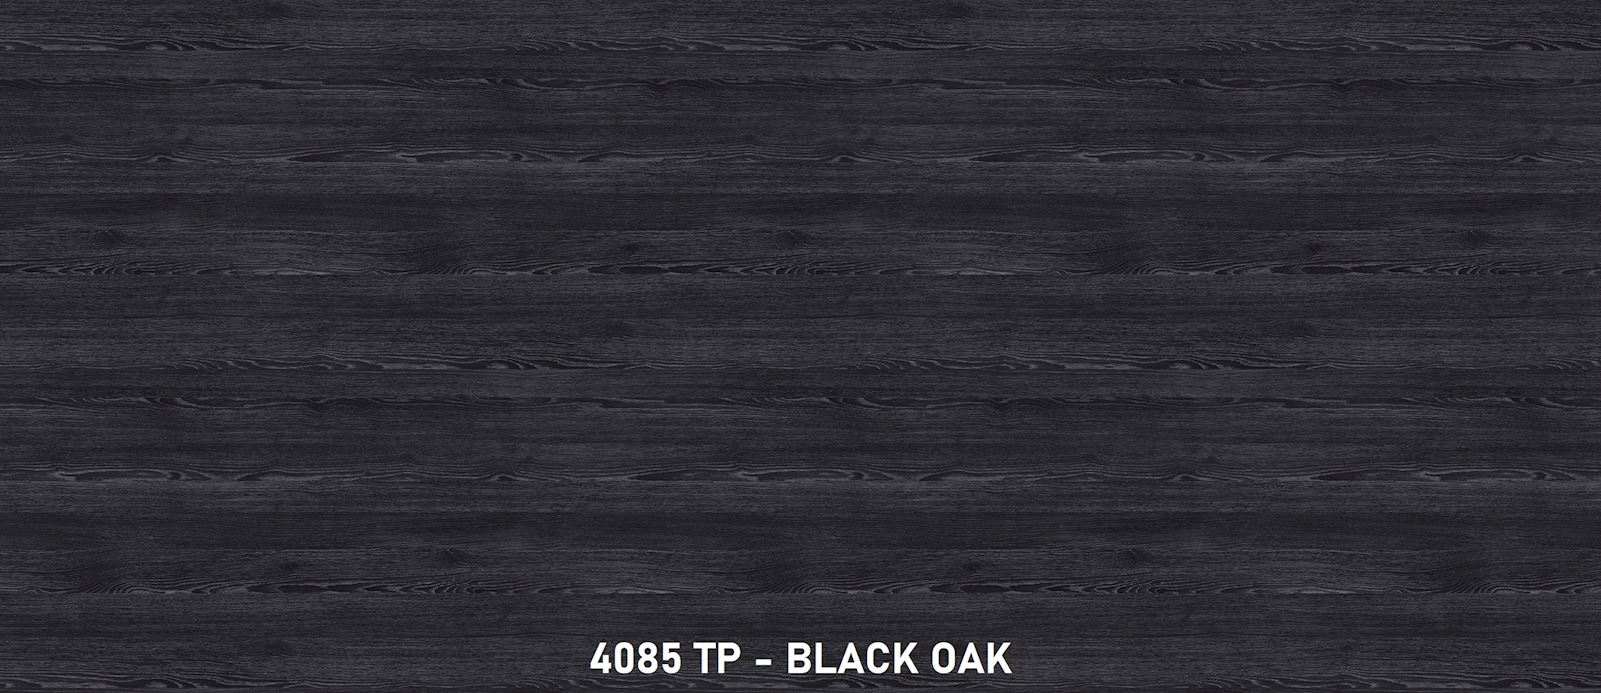 4085 TP Black Oak 1